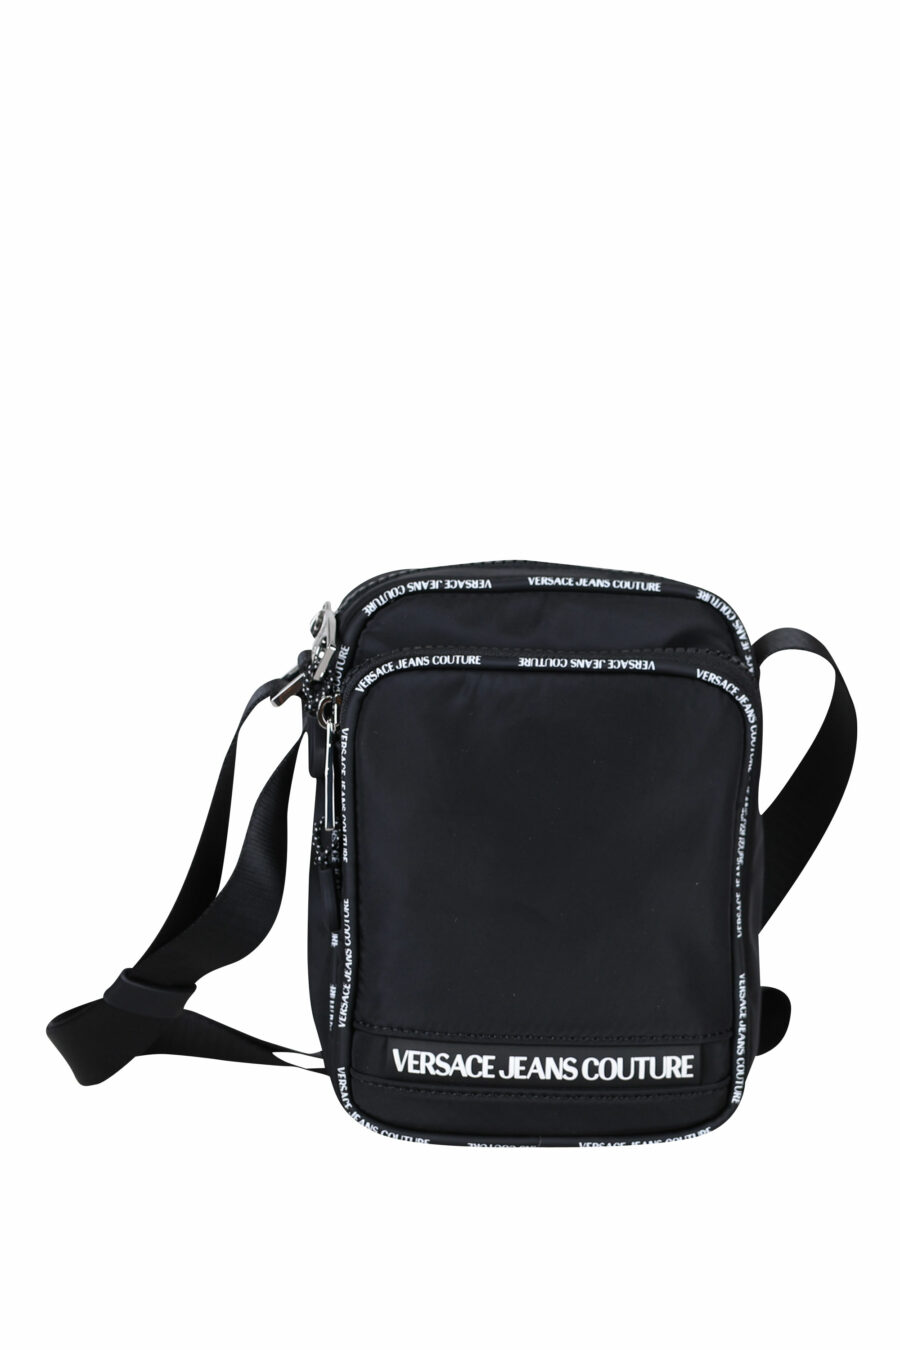 Schwarze Crossbody-Tasche mit weißem Mini-Schriftzug auf Band - 8052019409307